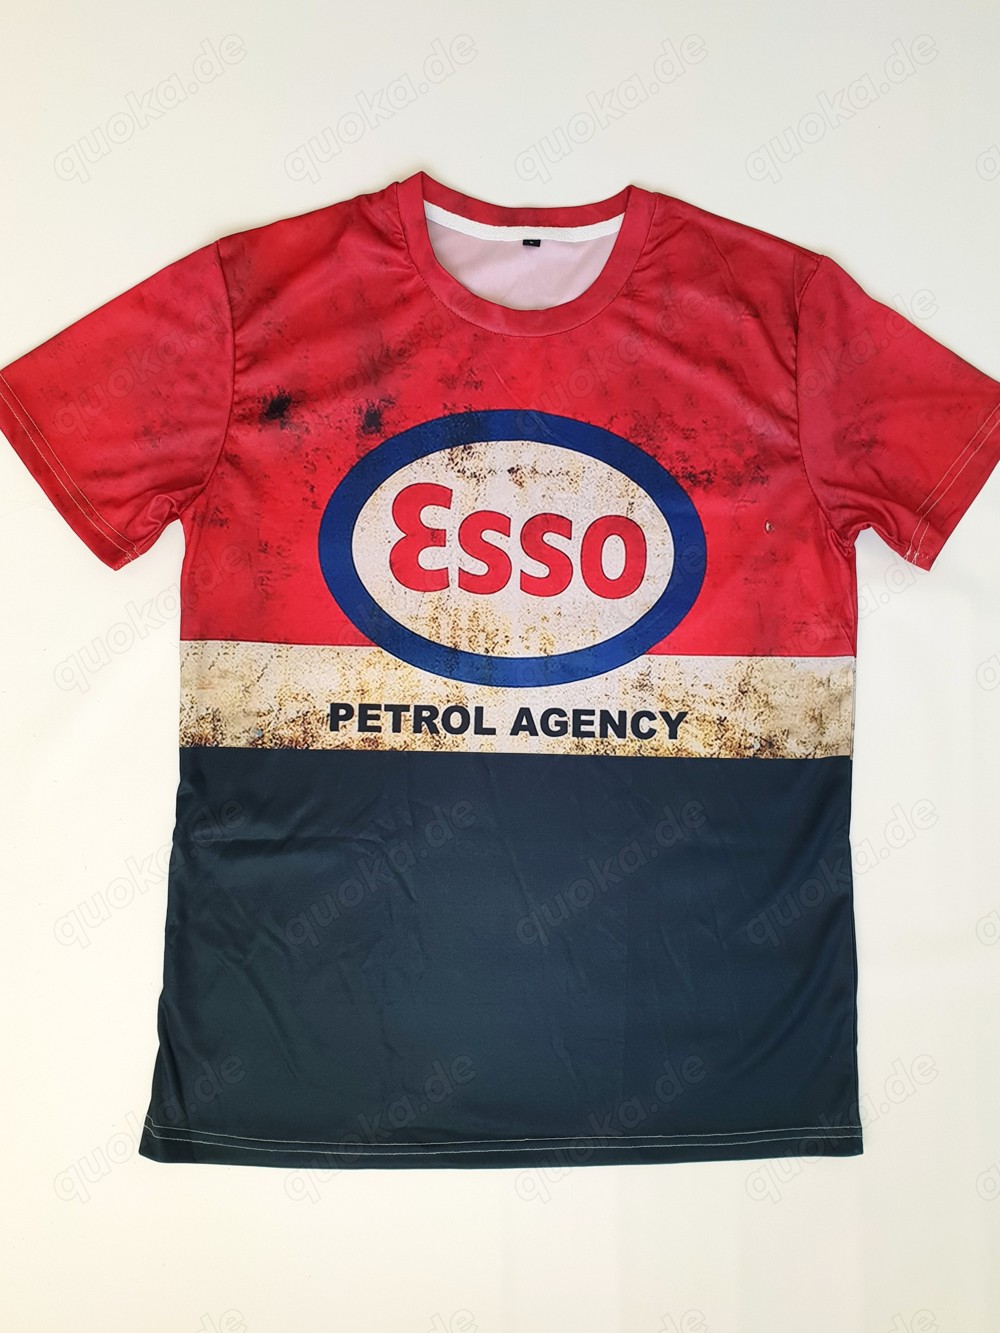 Neues Retro T-Shirt Gr. M, Stretch, Esso Petrol Agency Design